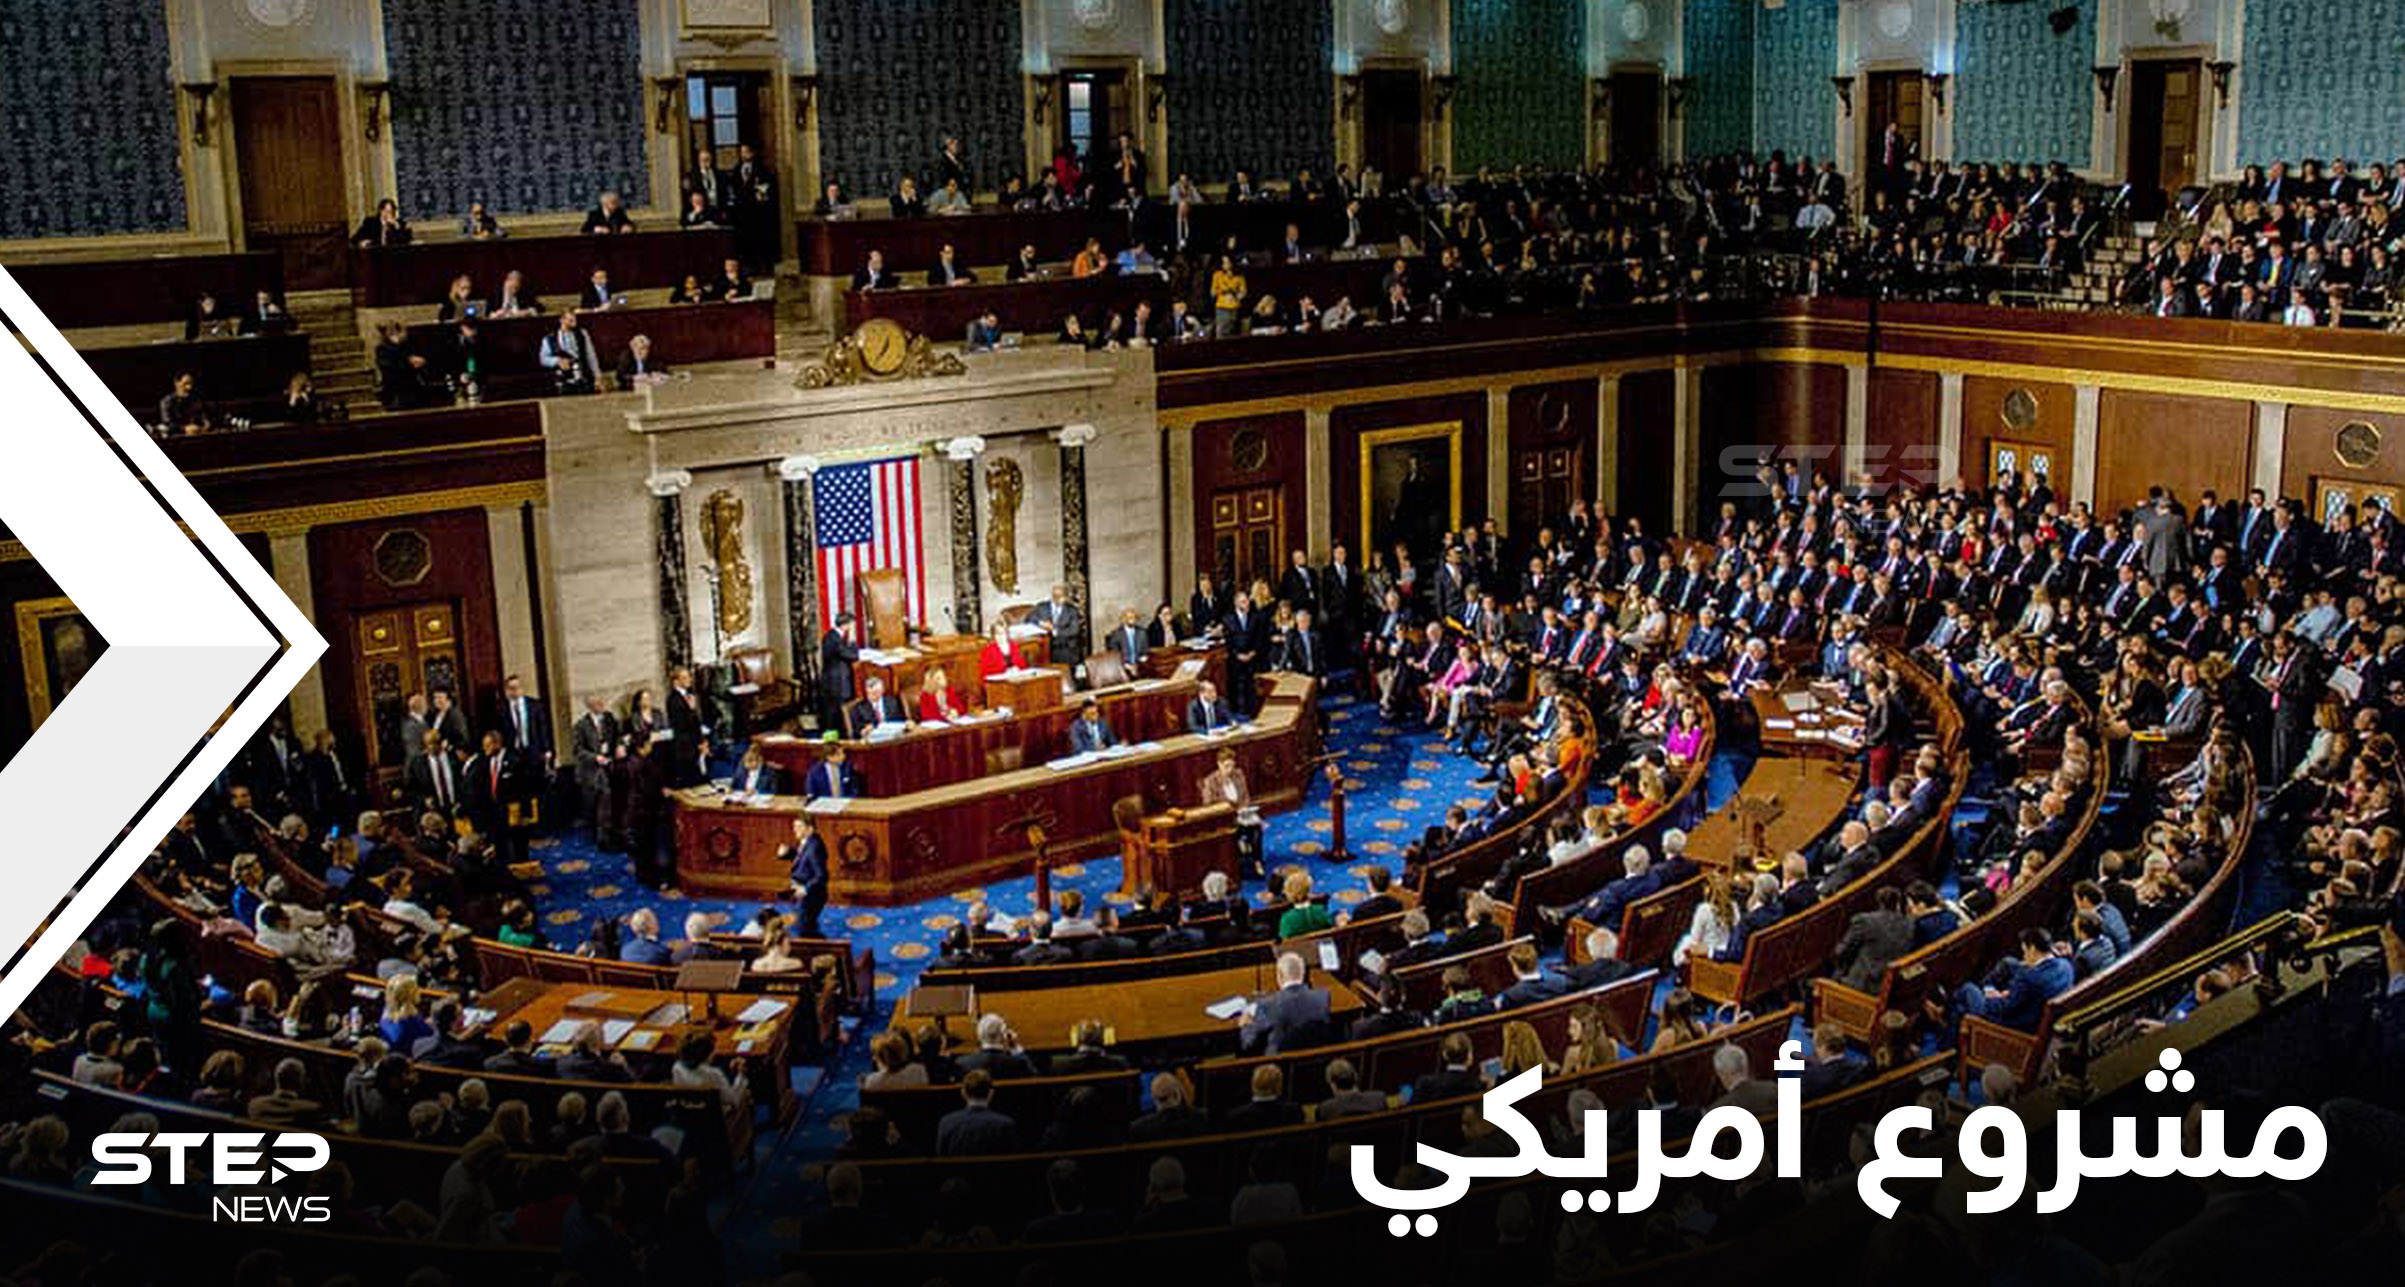 نائبان أمريكيان يقدمان مشروعاً جديداً لـ الكونغرس.. يتضمن مطلباً إذا تمّت الموافقة عليه سينهار النظام السوري